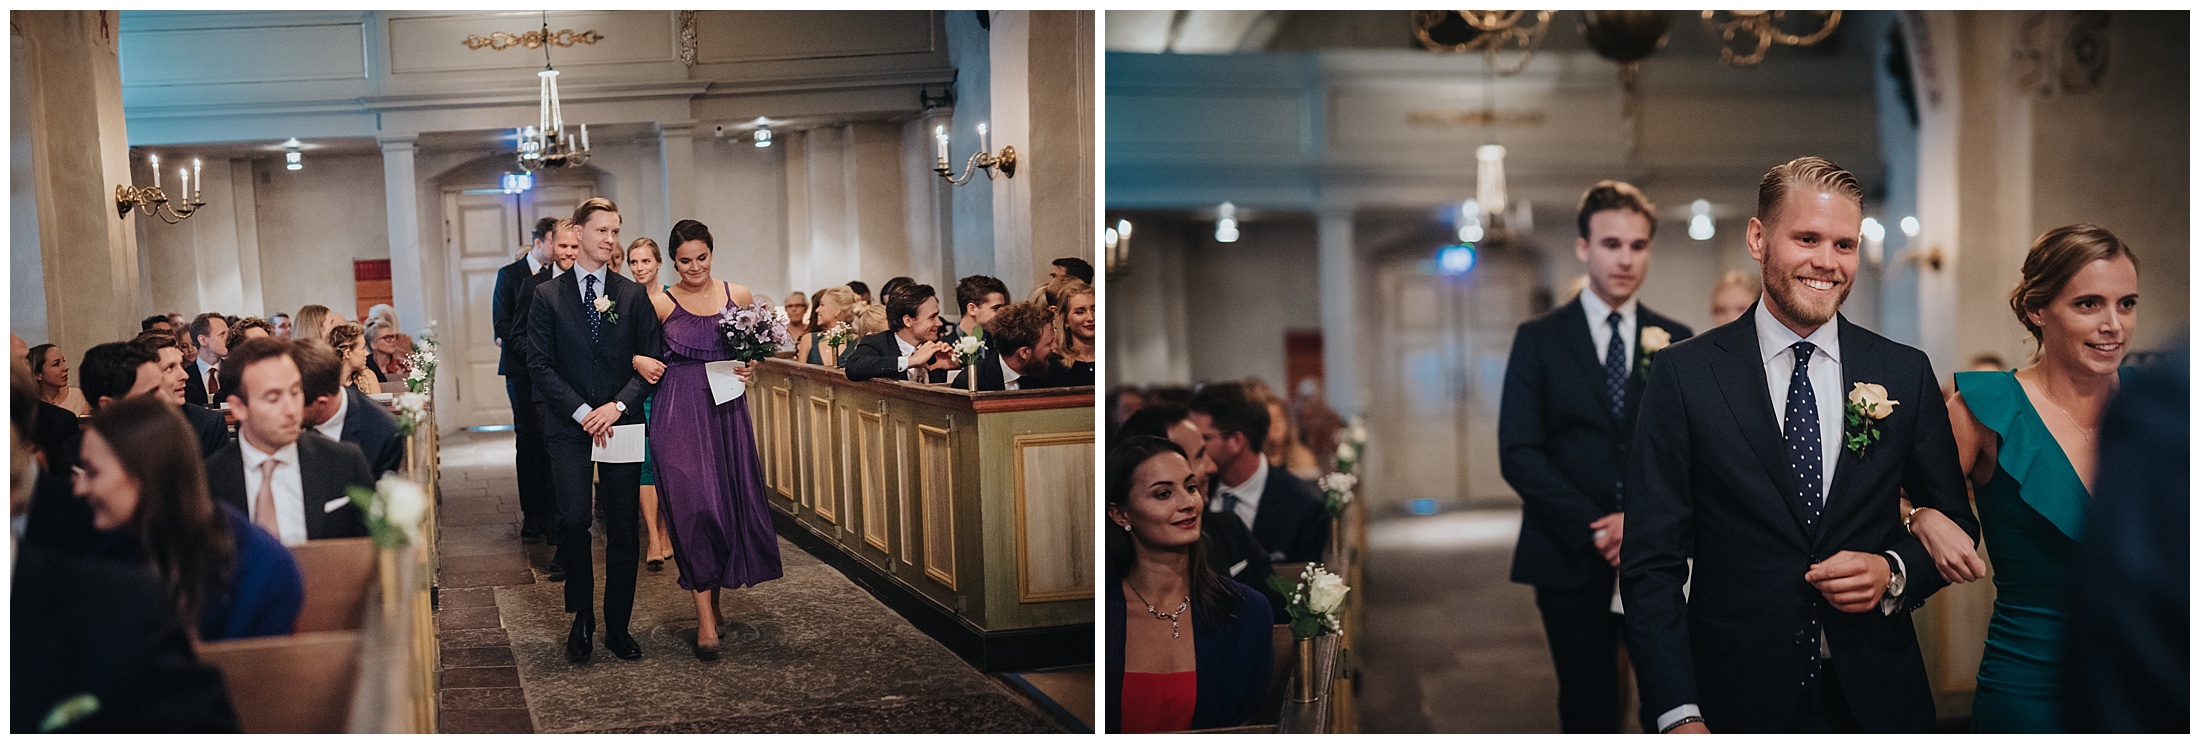 Martina och Johans bröllop på Ekerö och party vid Djurgården